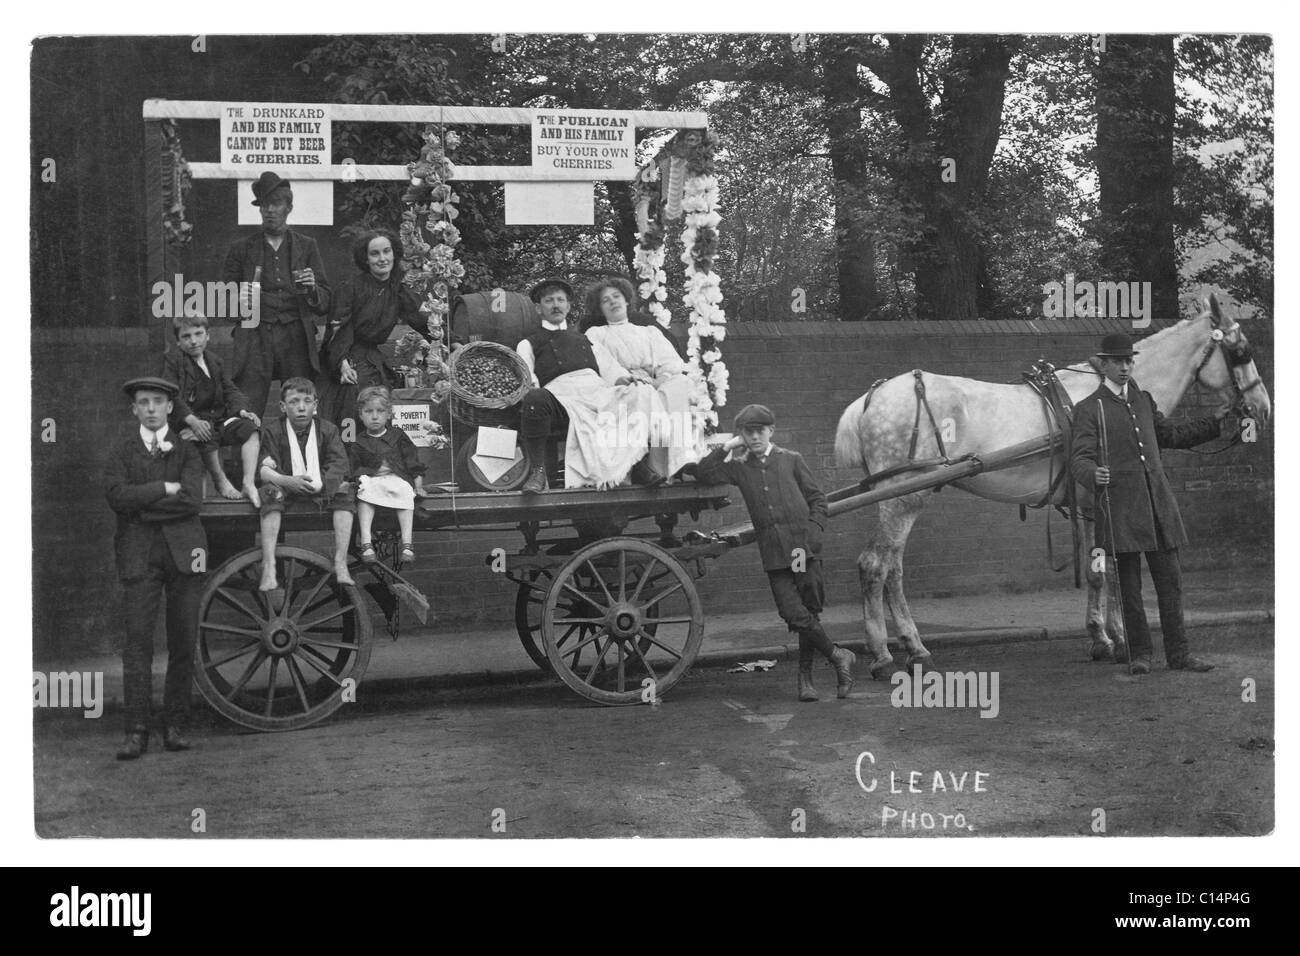 Ursprüngliche und klare Postkarte aus edwardianischer Zeit von Aktivisten der Temperance Society (einige Charaktere) auf einem Pferdewagen oder Wagen mit Schildern und gekleidet, um die Gefahren des Trinkens zu zeigen, möglicherweise ein Karnevalswagen, möglicherweise von Devon, wie das Cleave-Foto zeigen könnte (oder der Name des Fotografen sein könnte), Wahrscheinlich Südwestengland, Großbritannien - ca. 1910 Stockfoto